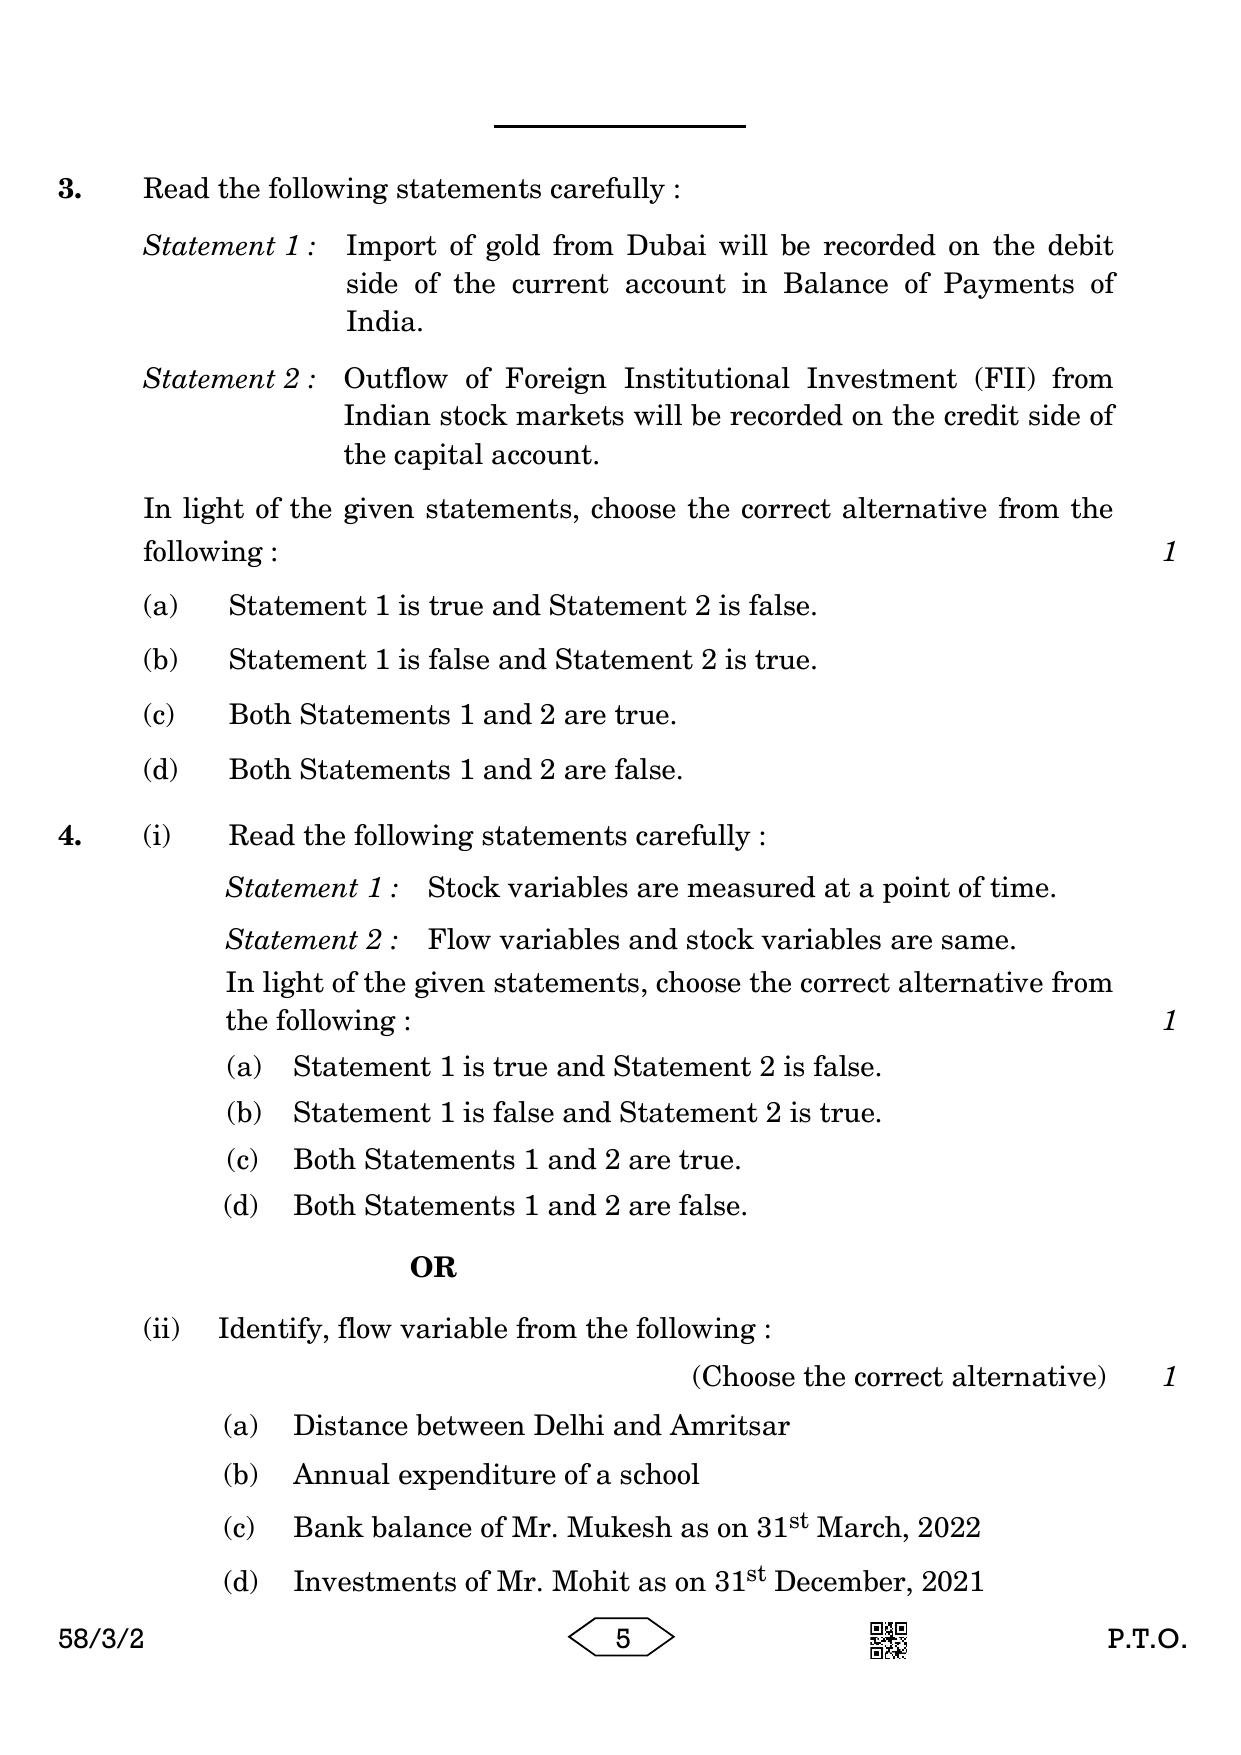 CBSE Class 12 58-3-2 Economics 2023 Question Paper - Page 5